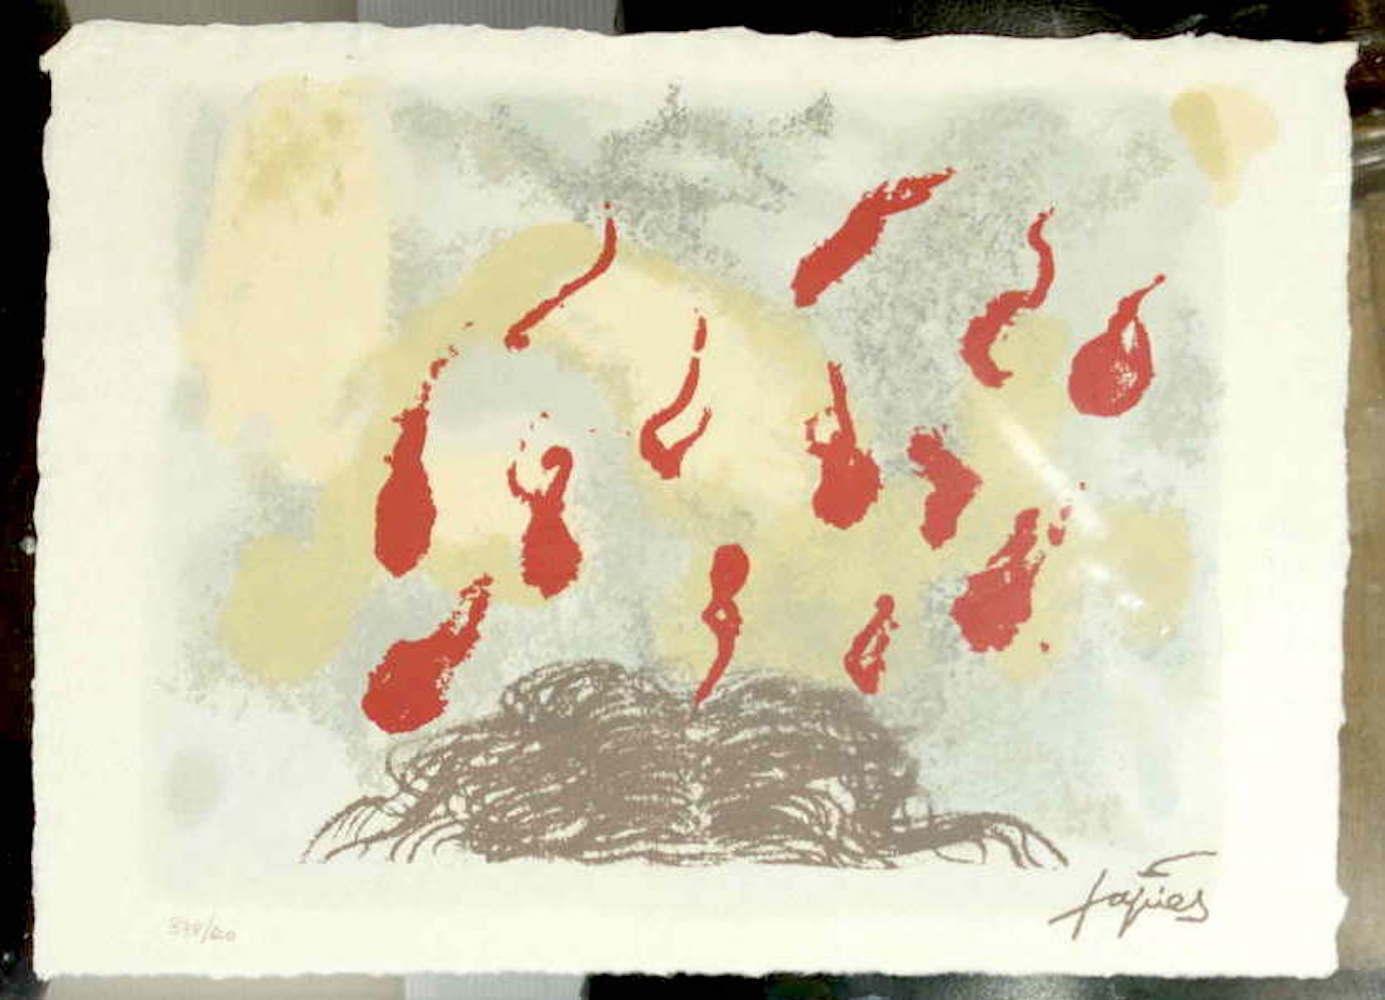 Cabellos y llamas - Original Lithograph After Antoni Tapies - 1987